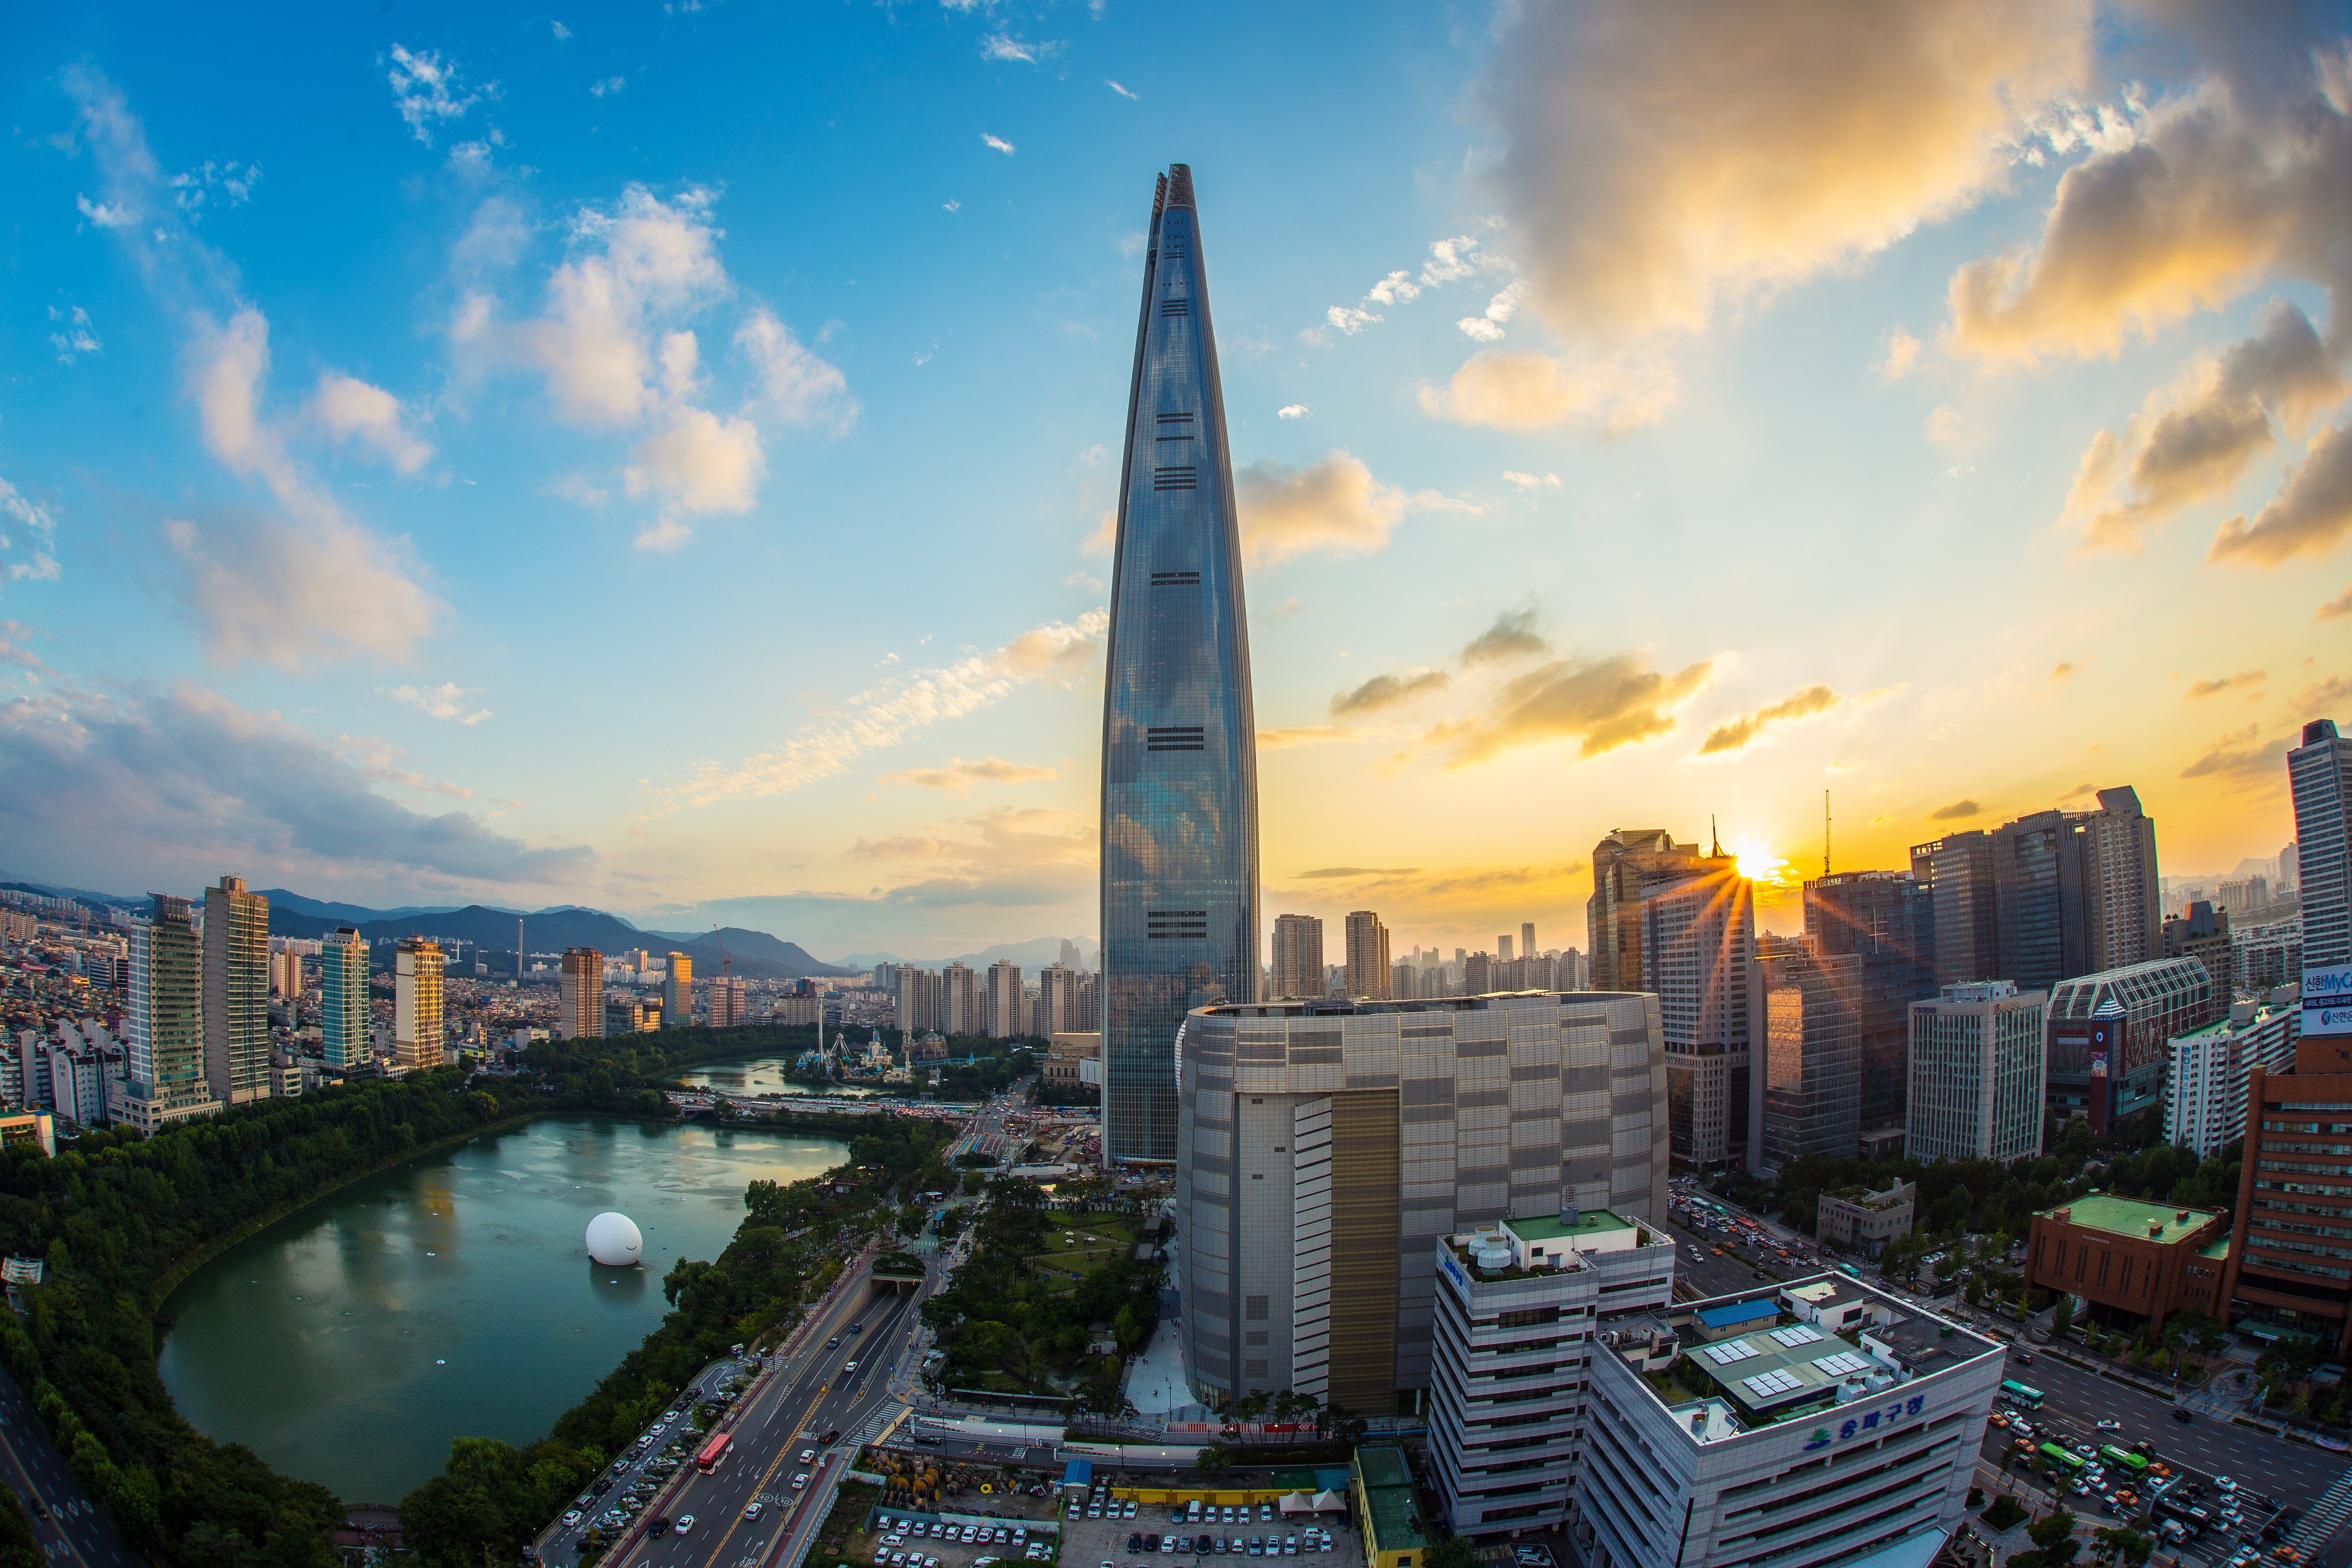 Qualidade do ar melhorou 40% em cidades que adotaram distanciamento social. Acima: imagem de Seul, capital da Coreia do Sul (Foto: Pexels)